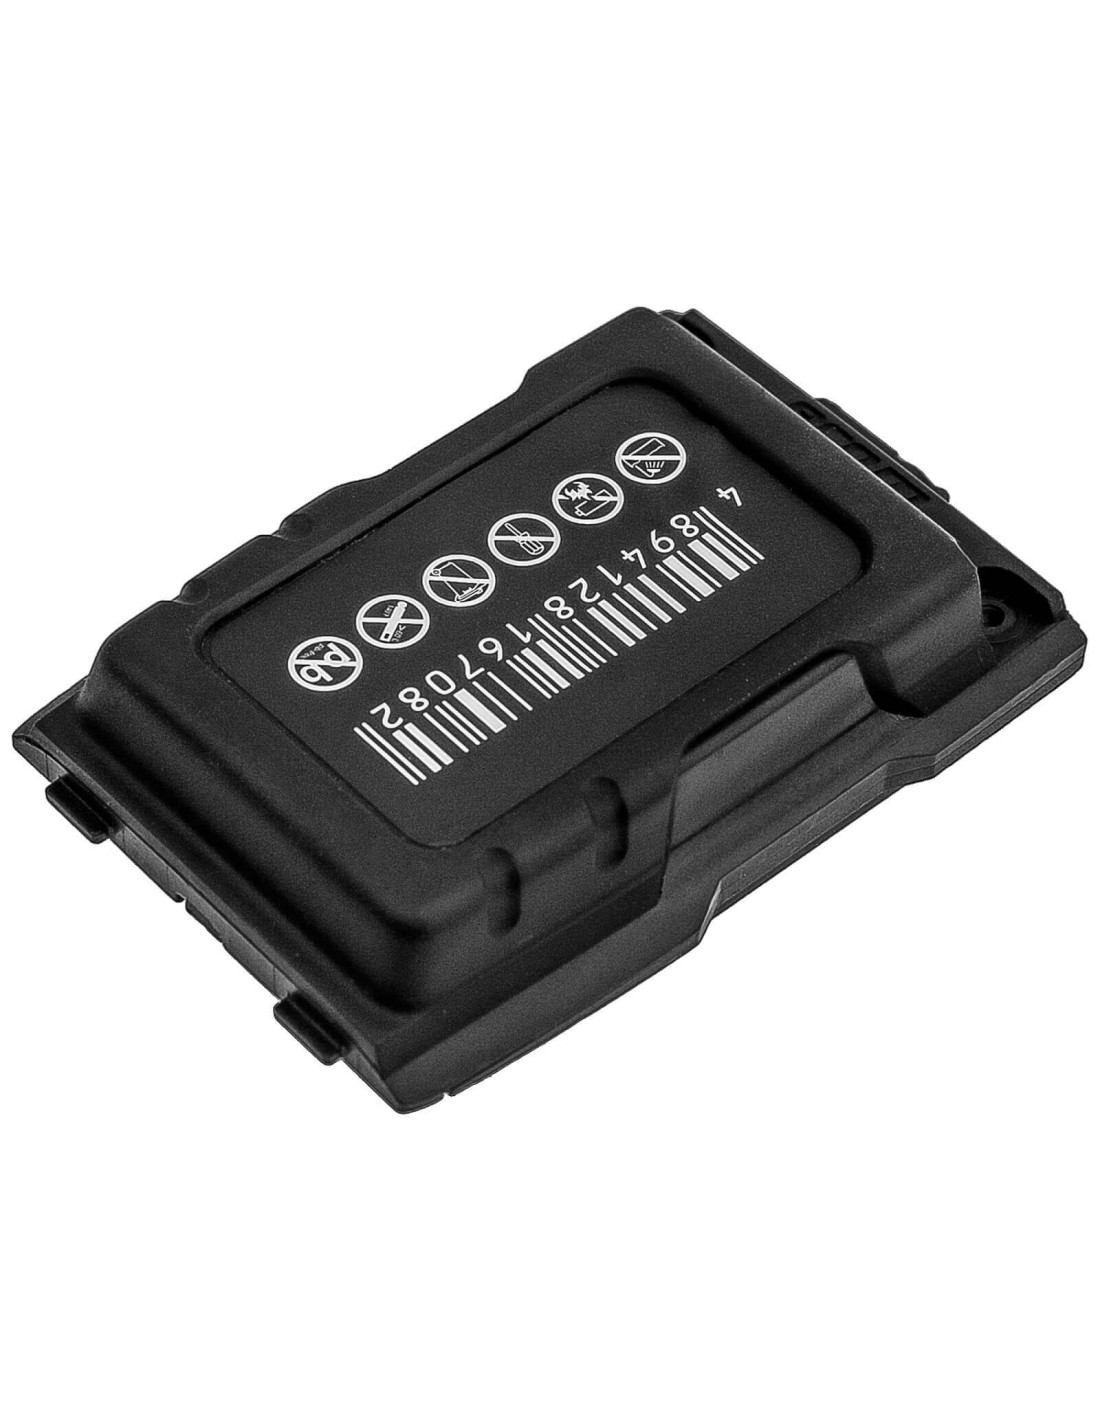 Battery for Sonim, Ecom Ex-handy 07, Ecom Ex-handy 08, Xp3410 Is 3.7V, 1850mAh - 6.85Wh